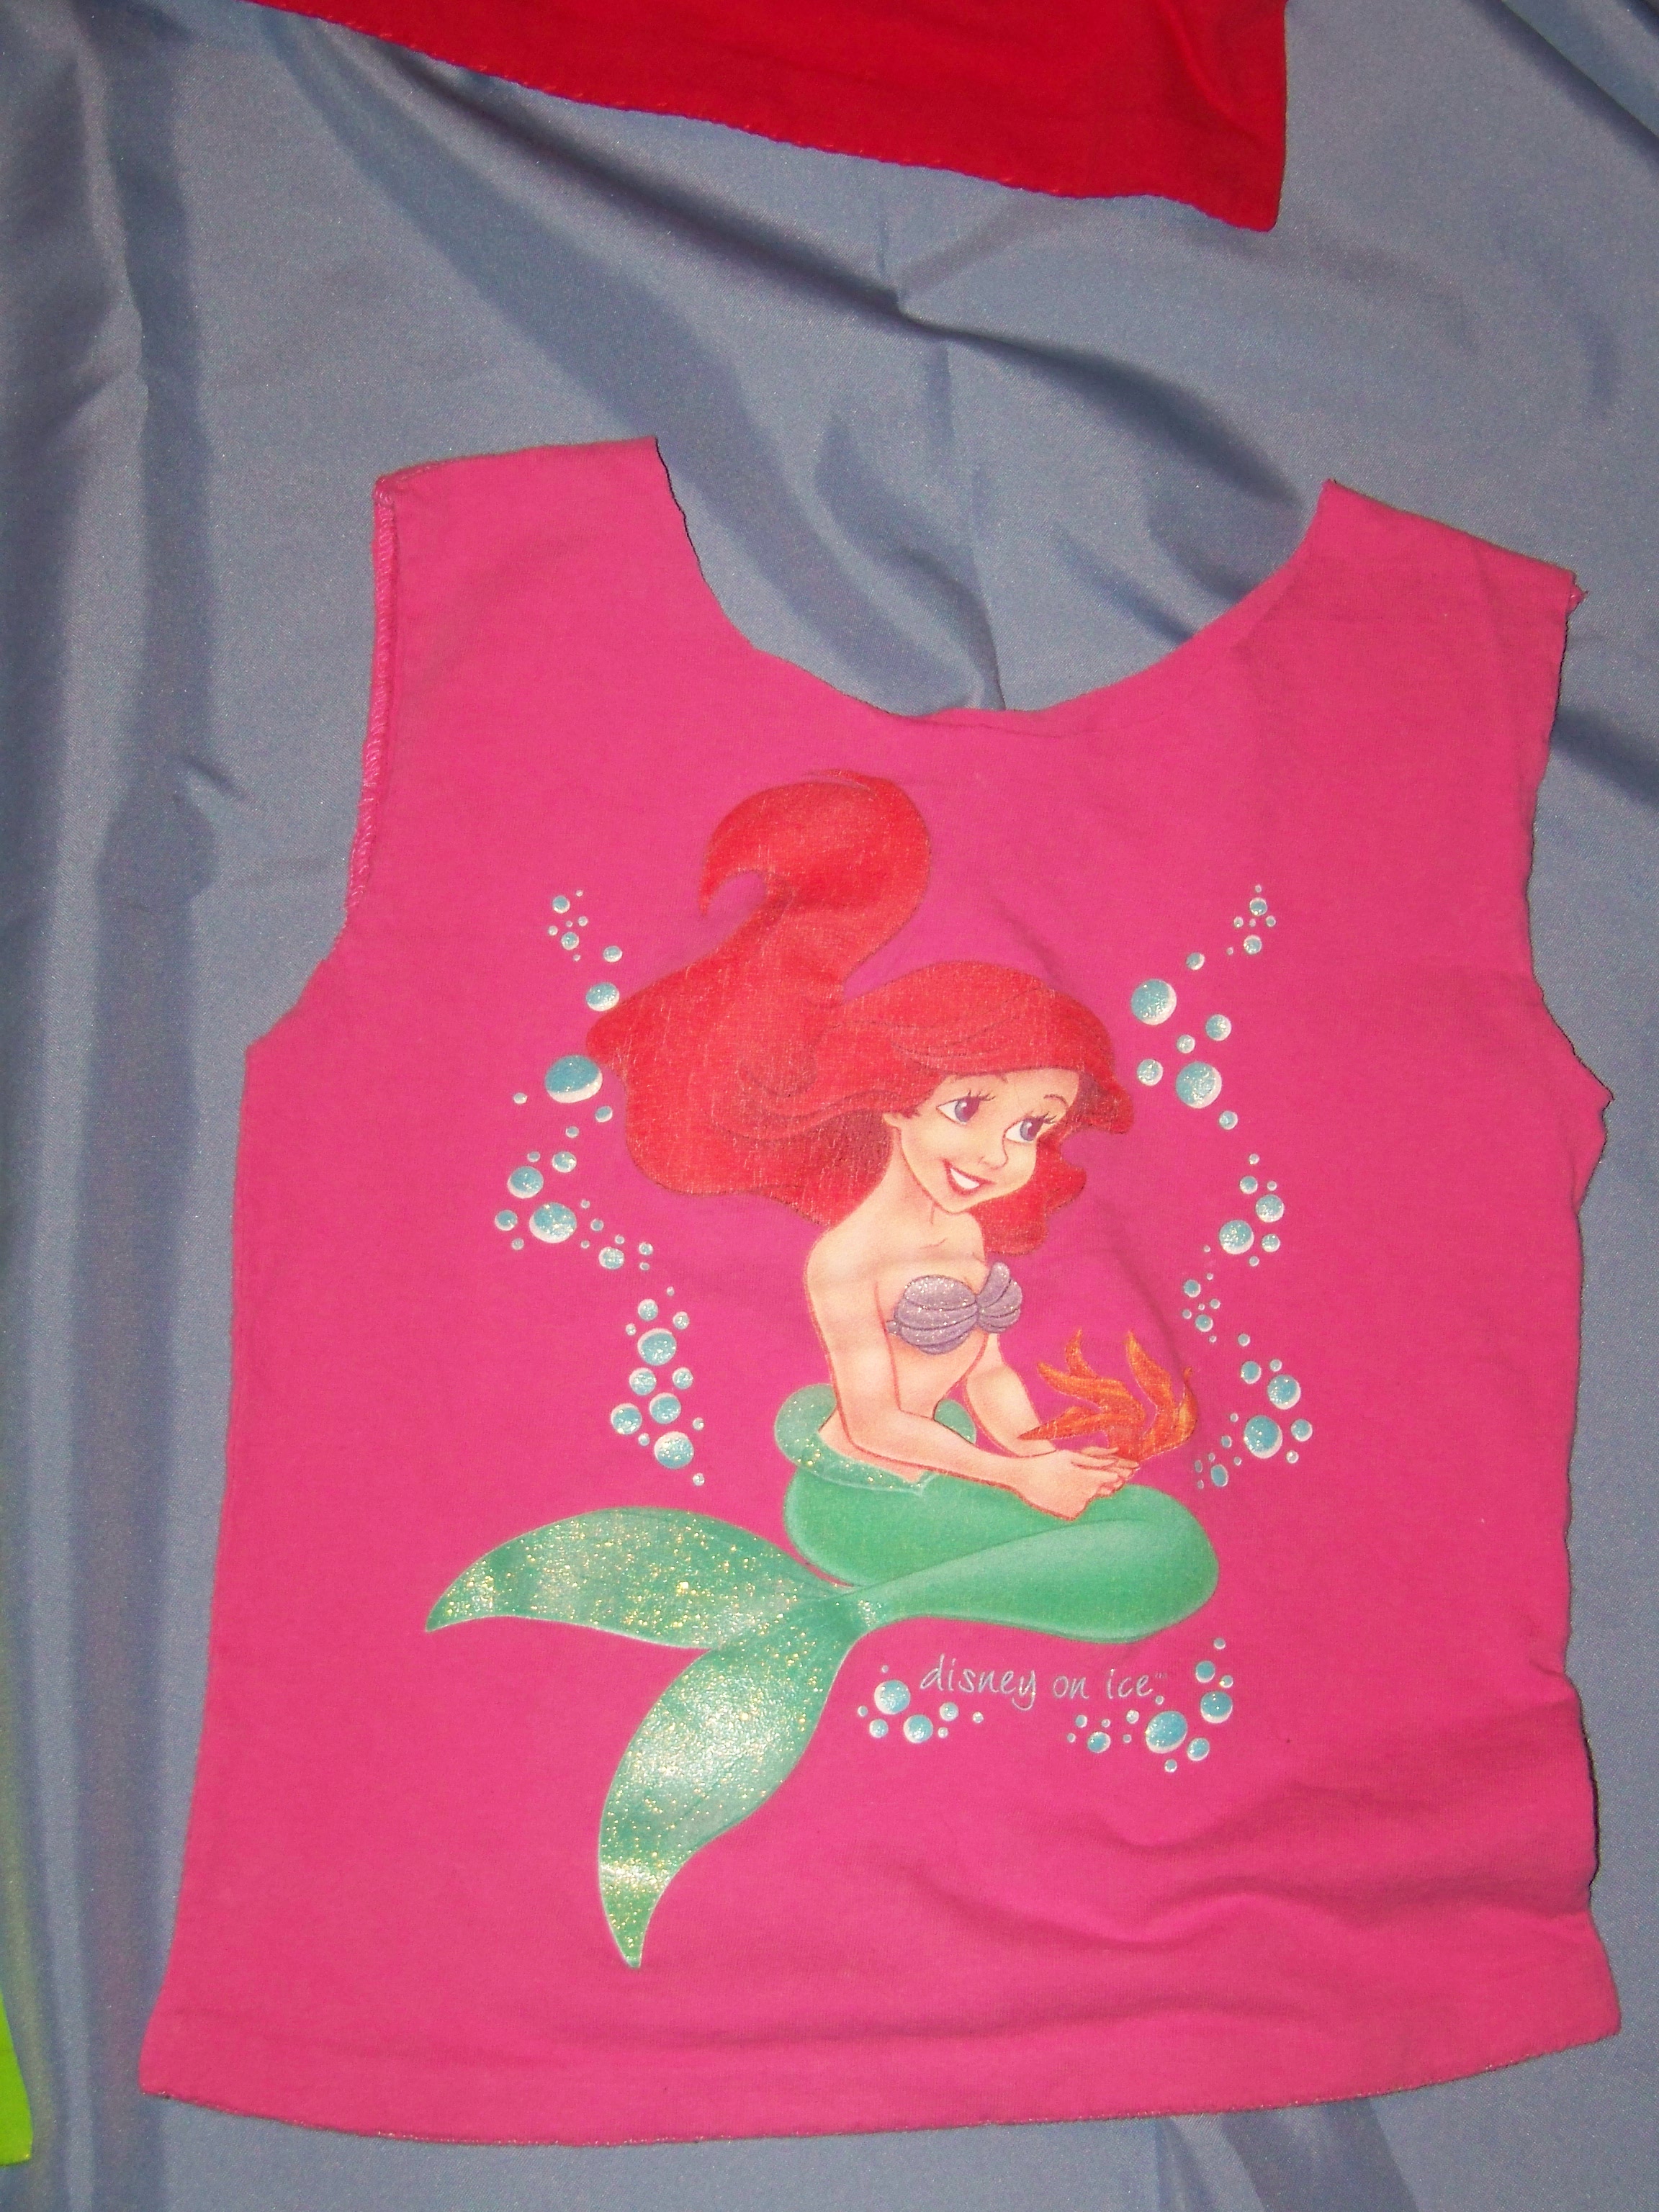 Tshirt tote 100-4144 pink mermaid